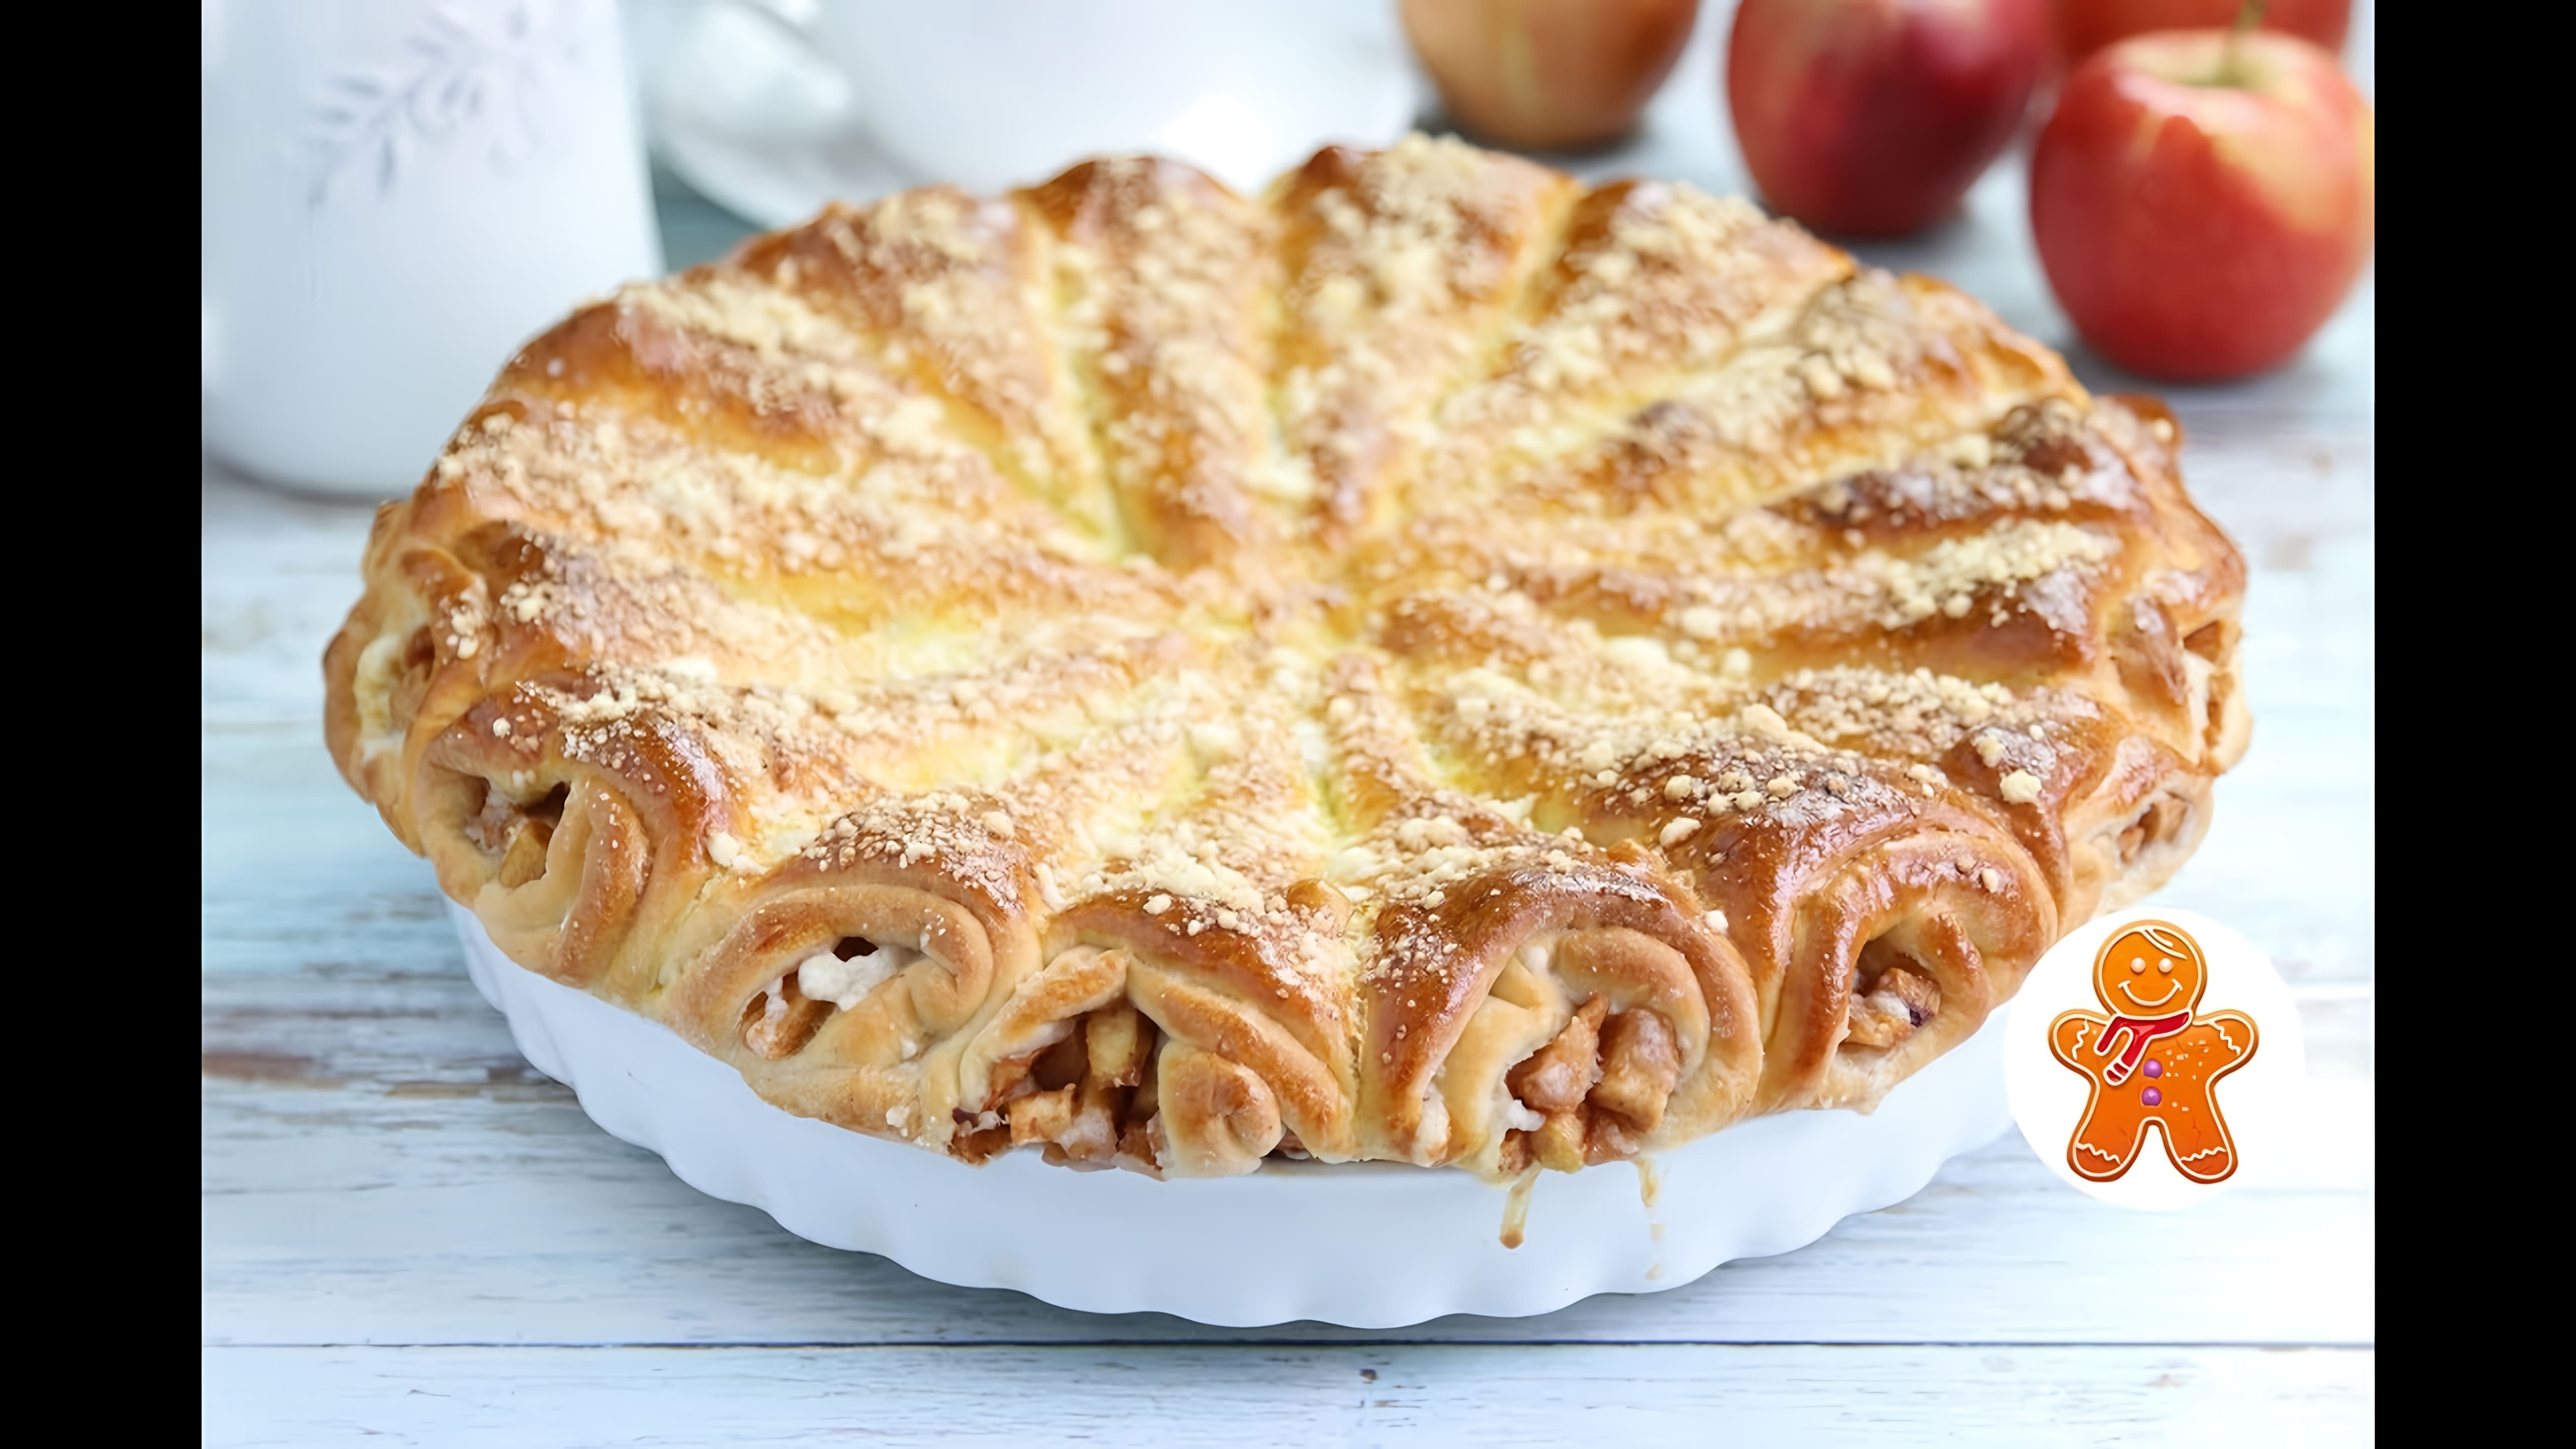 В этом видео демонстрируется процесс приготовления слоеного яблочного пирога "Яблочные рожки"